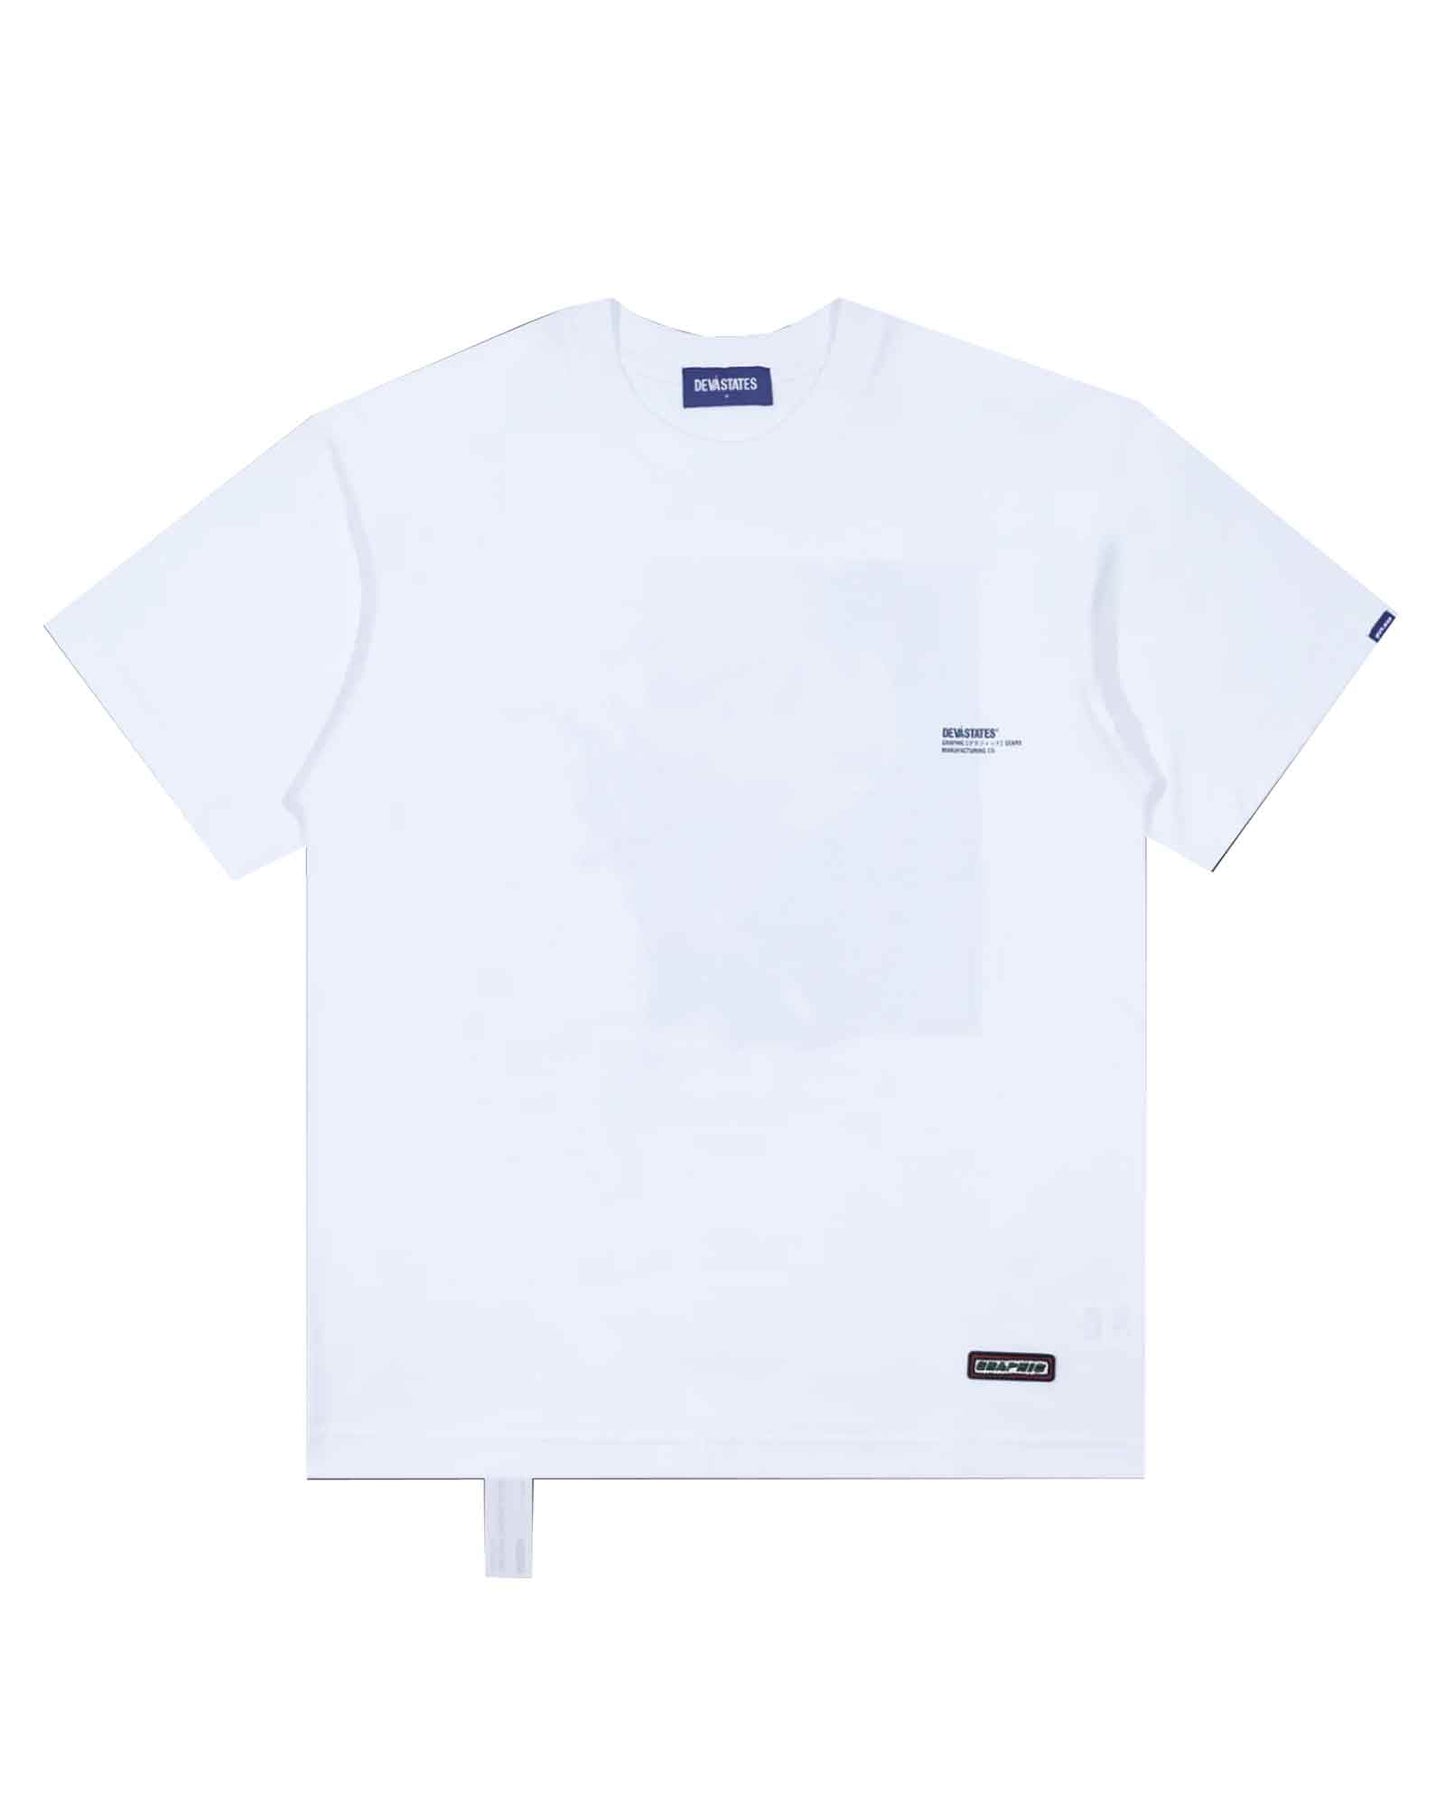 ディーヴァステイツ/Tshirt - KS-1/Tシャツ/White